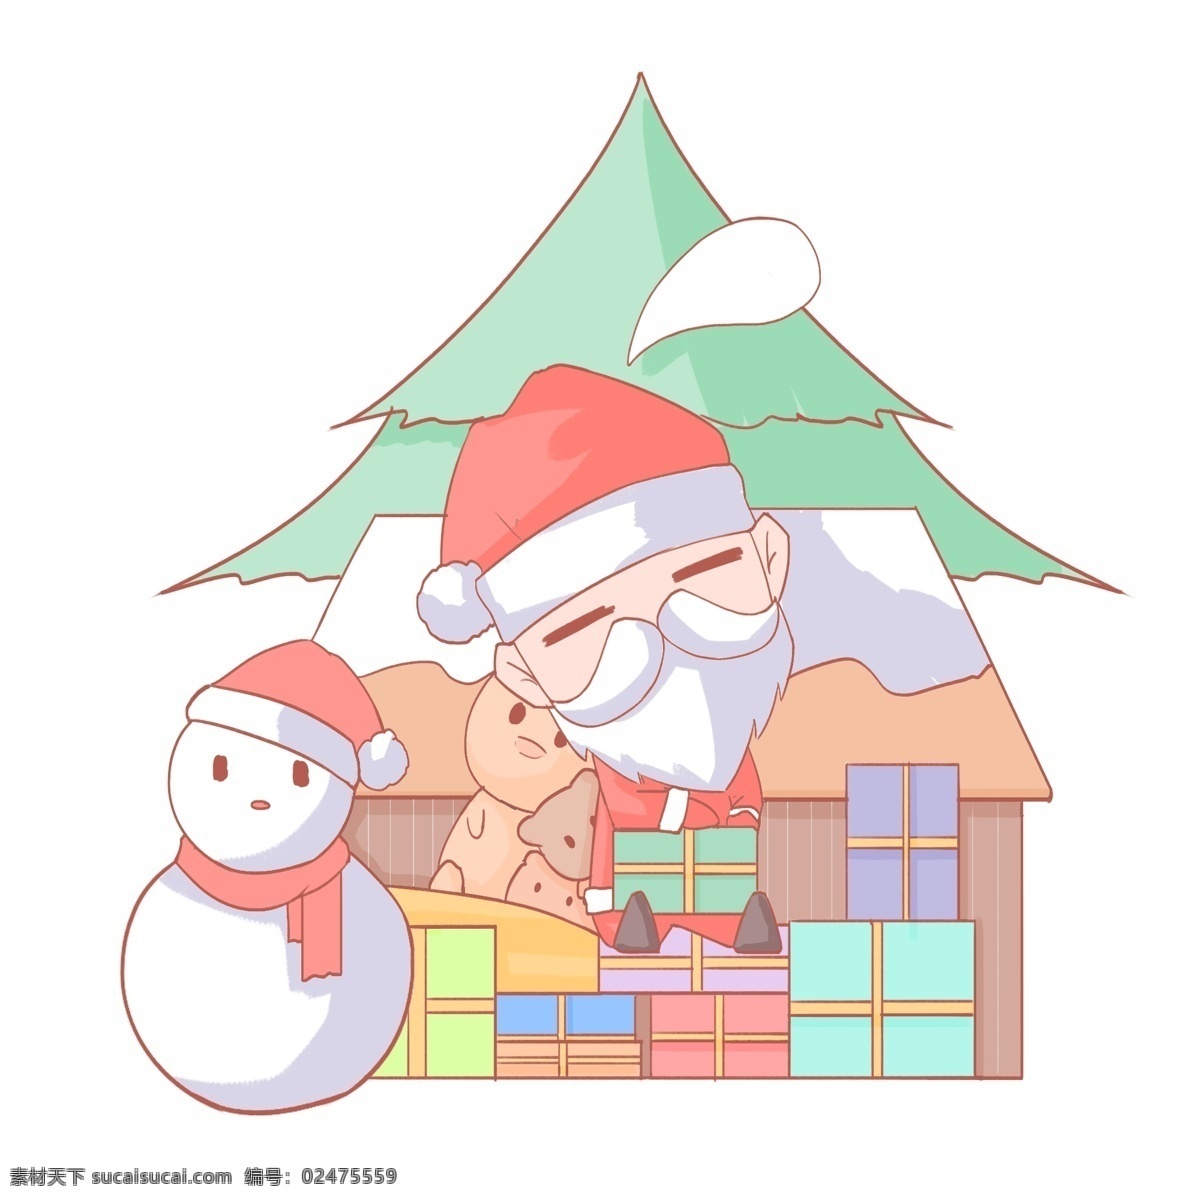 圣诞节 卡通 手绘 睡着 圣诞老人 免 扣 卡通手绘风格 小熊 雪人 圣诞帽 木屋 积雪 圣诞树 礼物